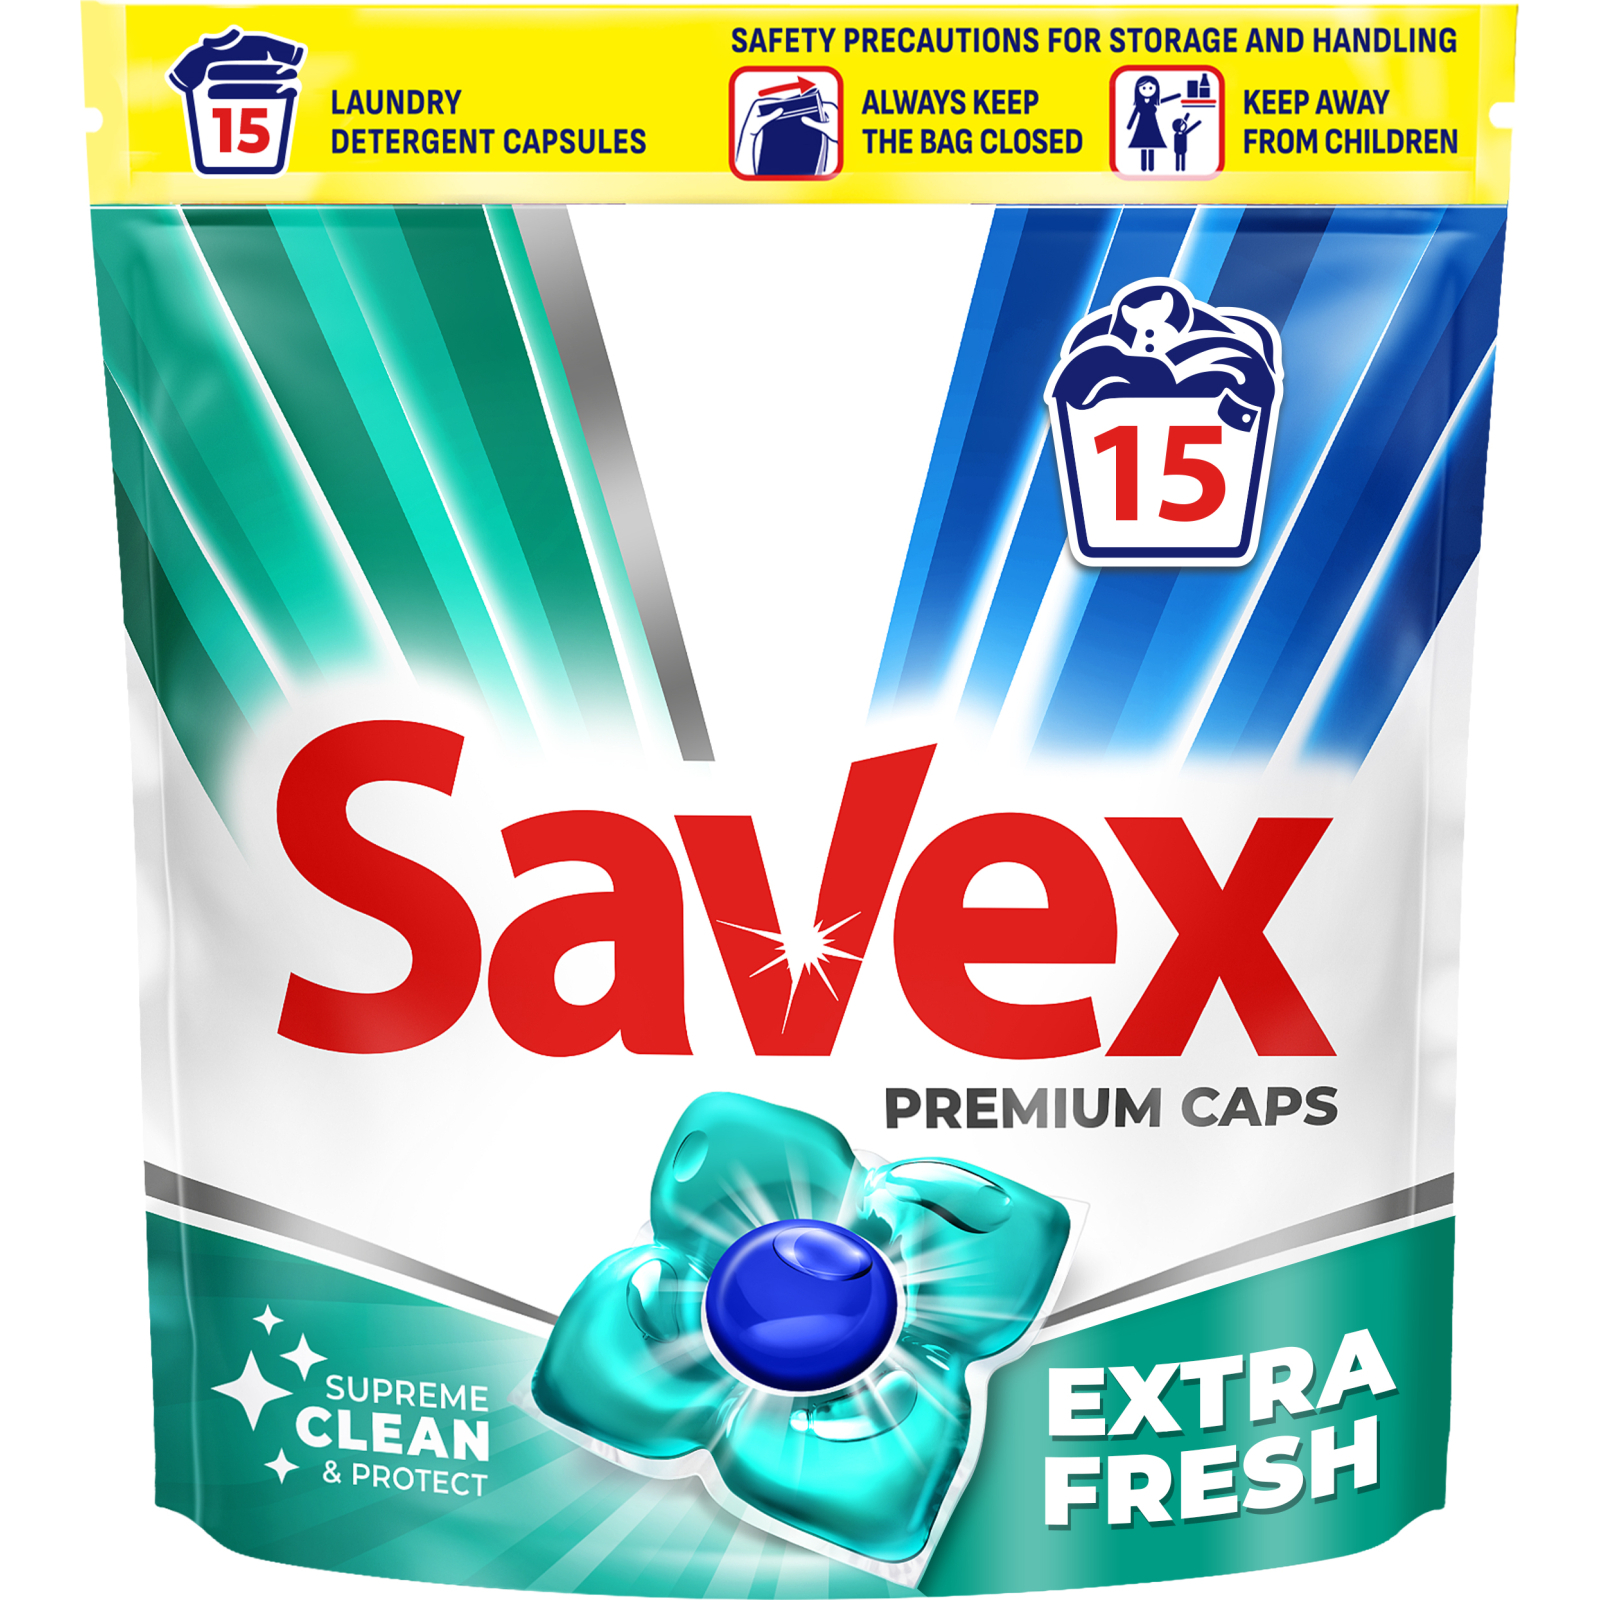 Капсулы для стирки Savex Super Caps Extra Fresh 15 шт. (3800024046858)